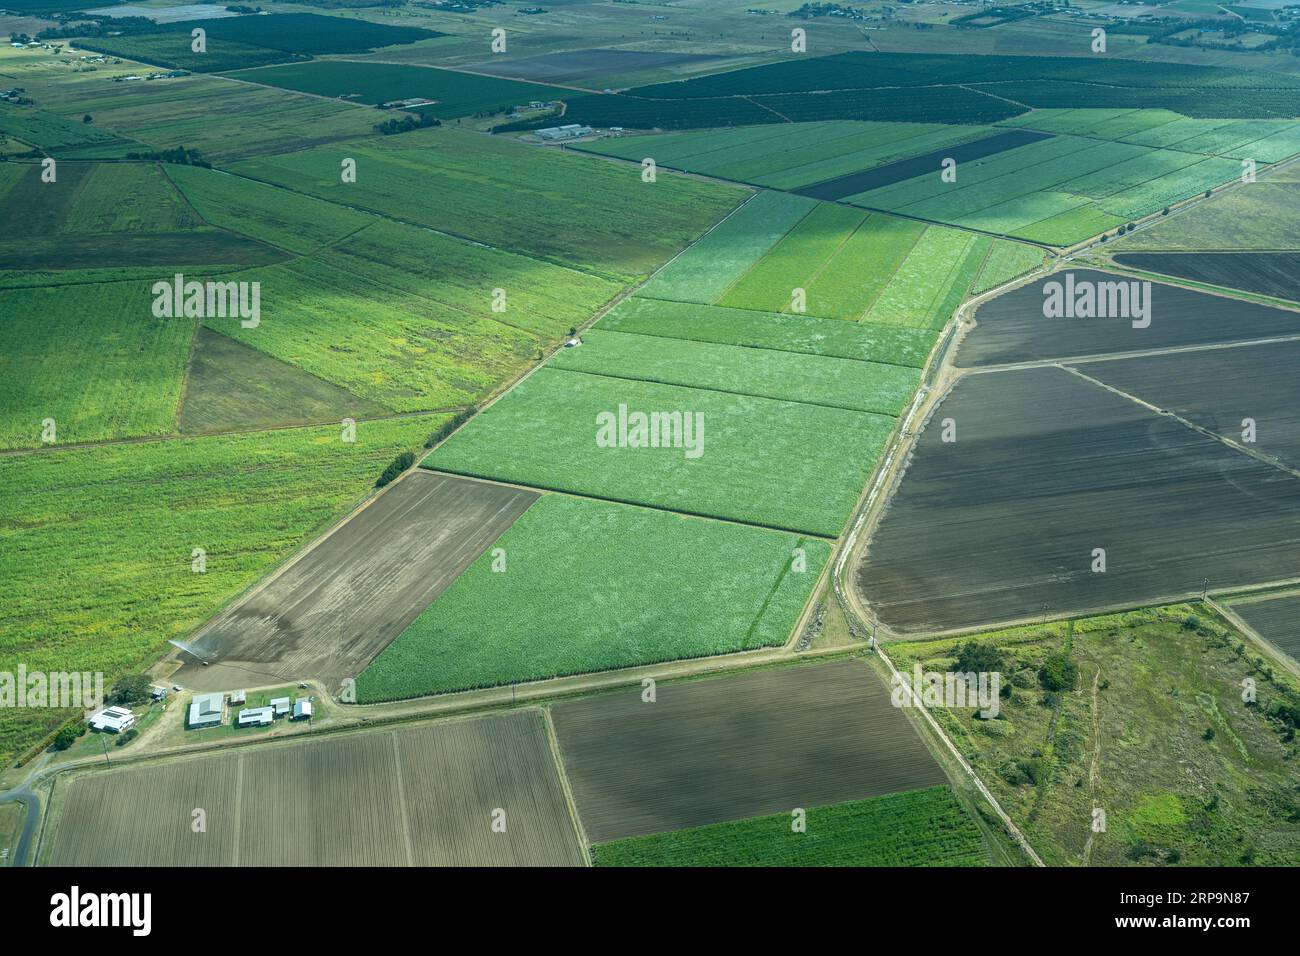 Vista aerea delle piantagioni di canna da zucchero nella regione di Burnett vicino a Bundaberg, Queensland Australia Foto Stock